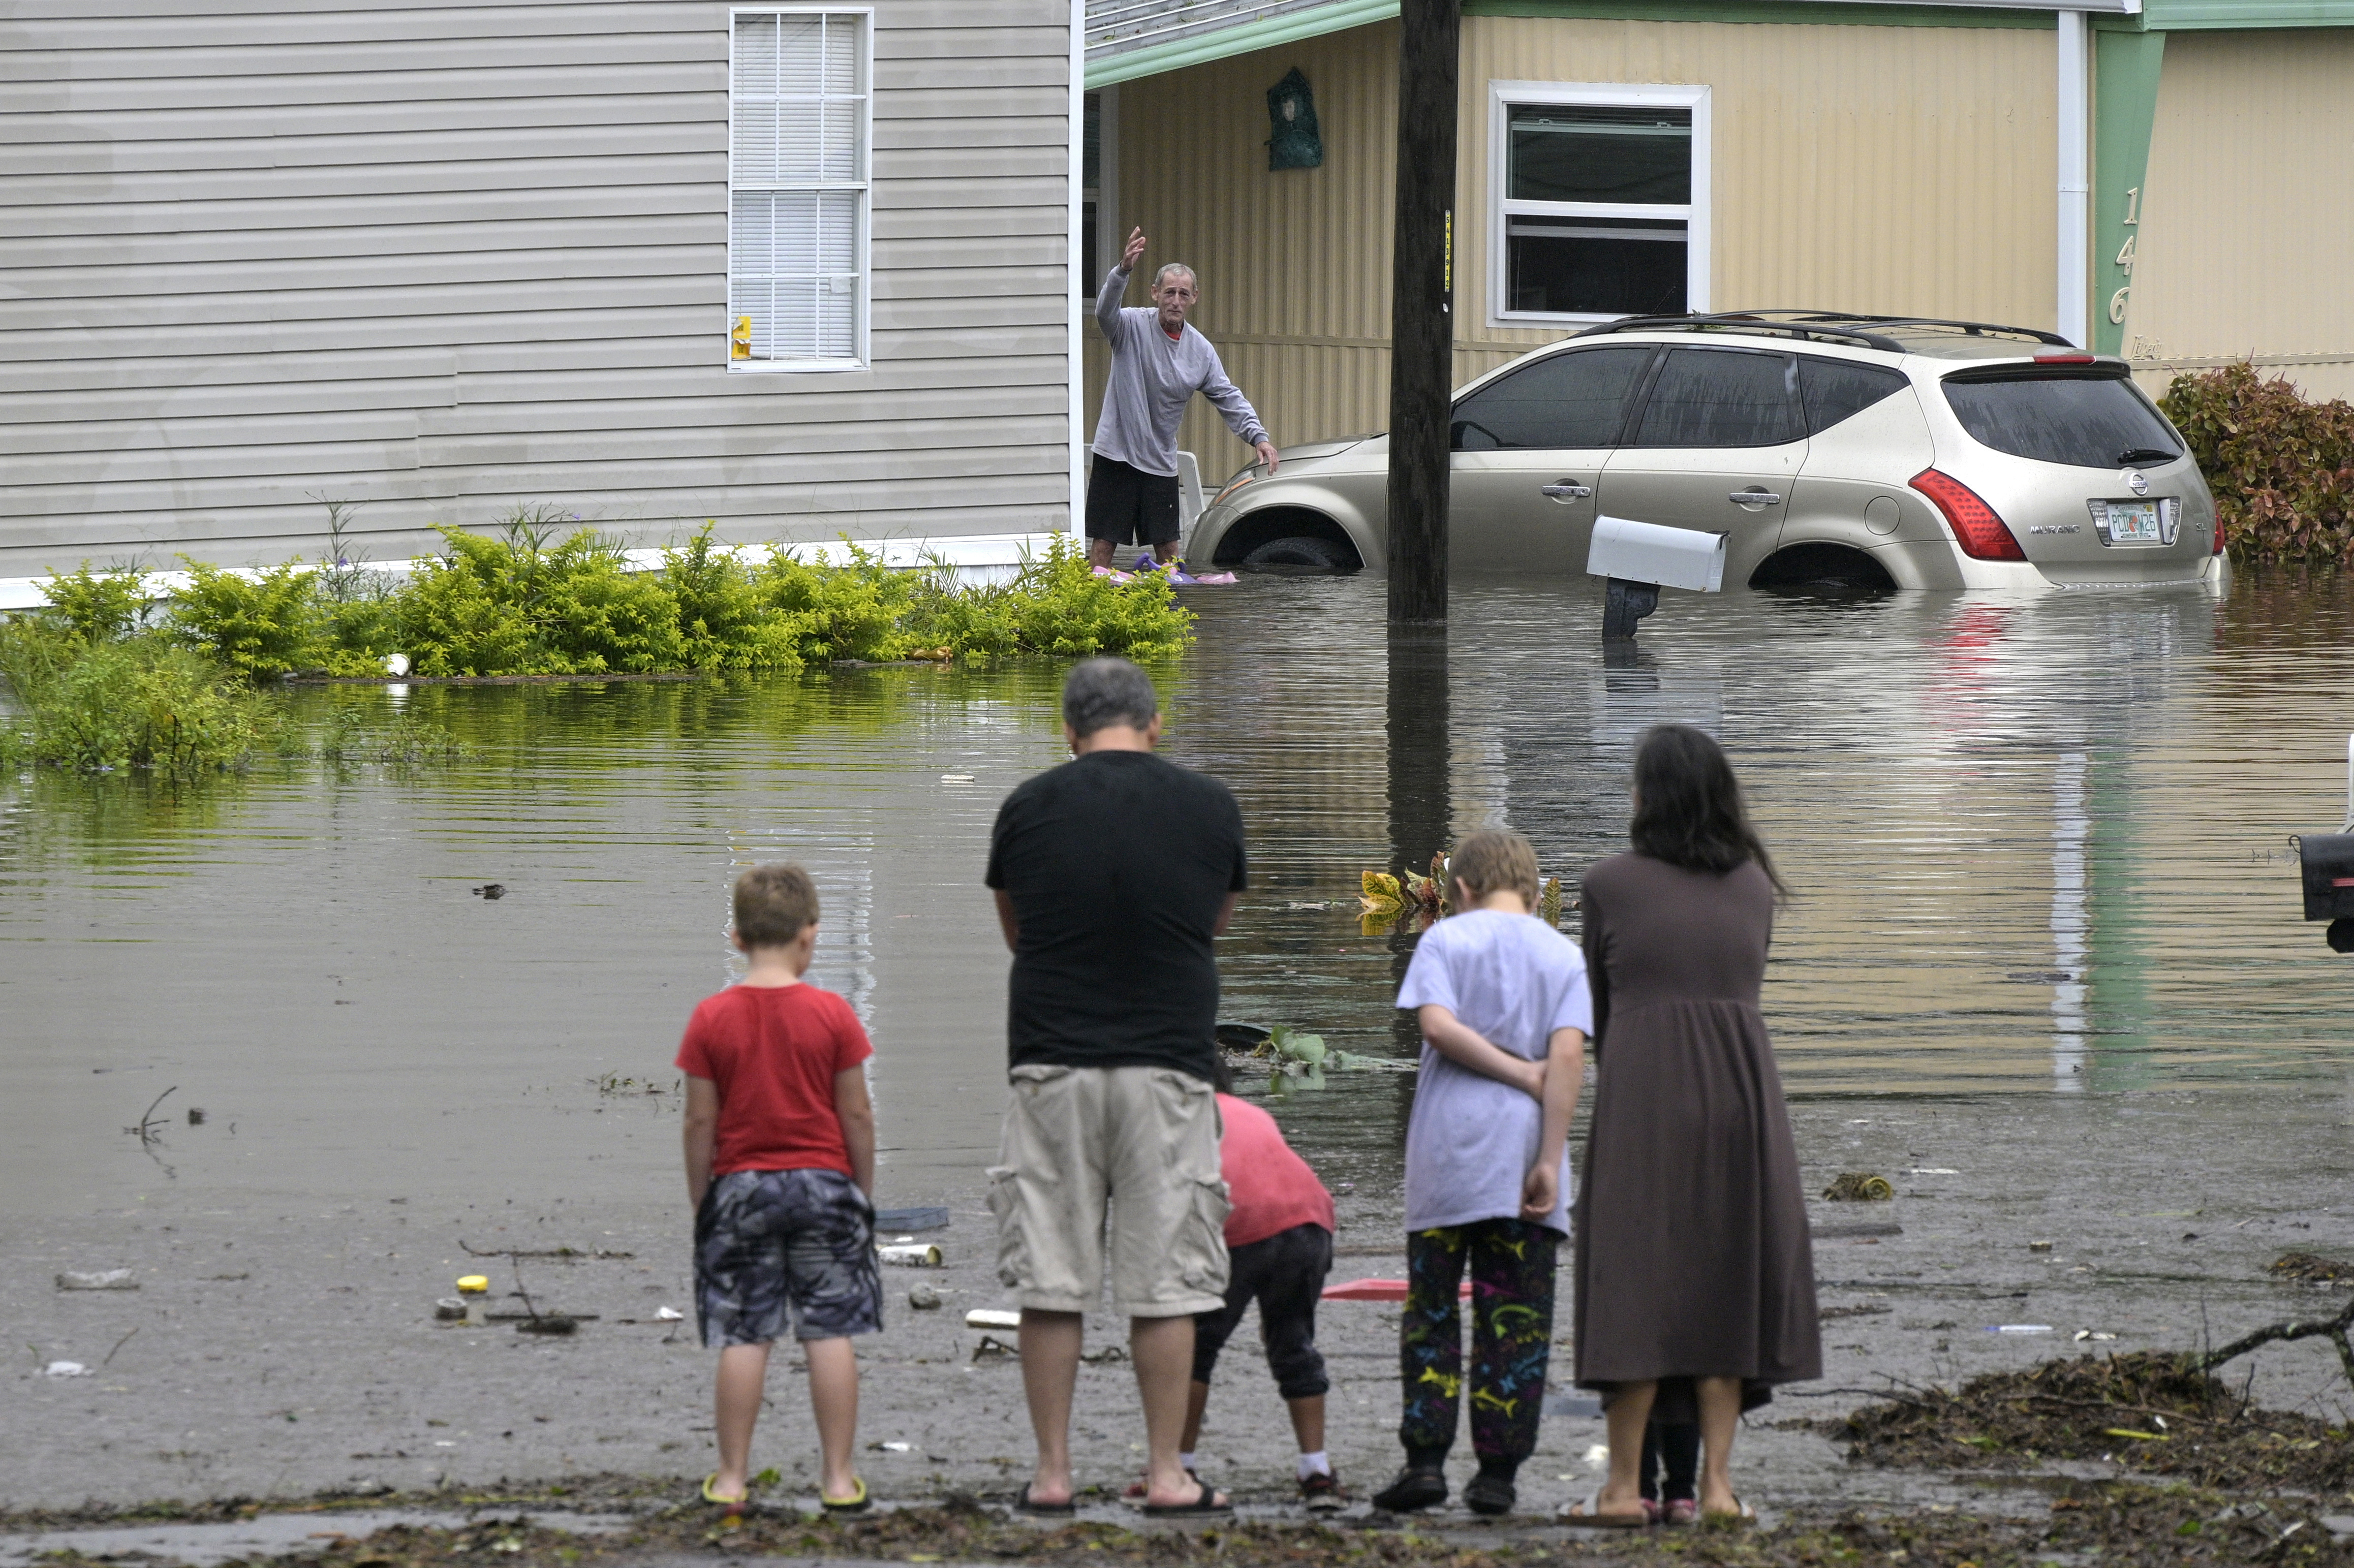 Los residentes se comprueban unos a otros en un barrio inundado tras el paso del huracán Ian, el jueves 29 de septiembre de 2022, en Orlando, Florida (AP Photo/Phelan M. Ebenhack)